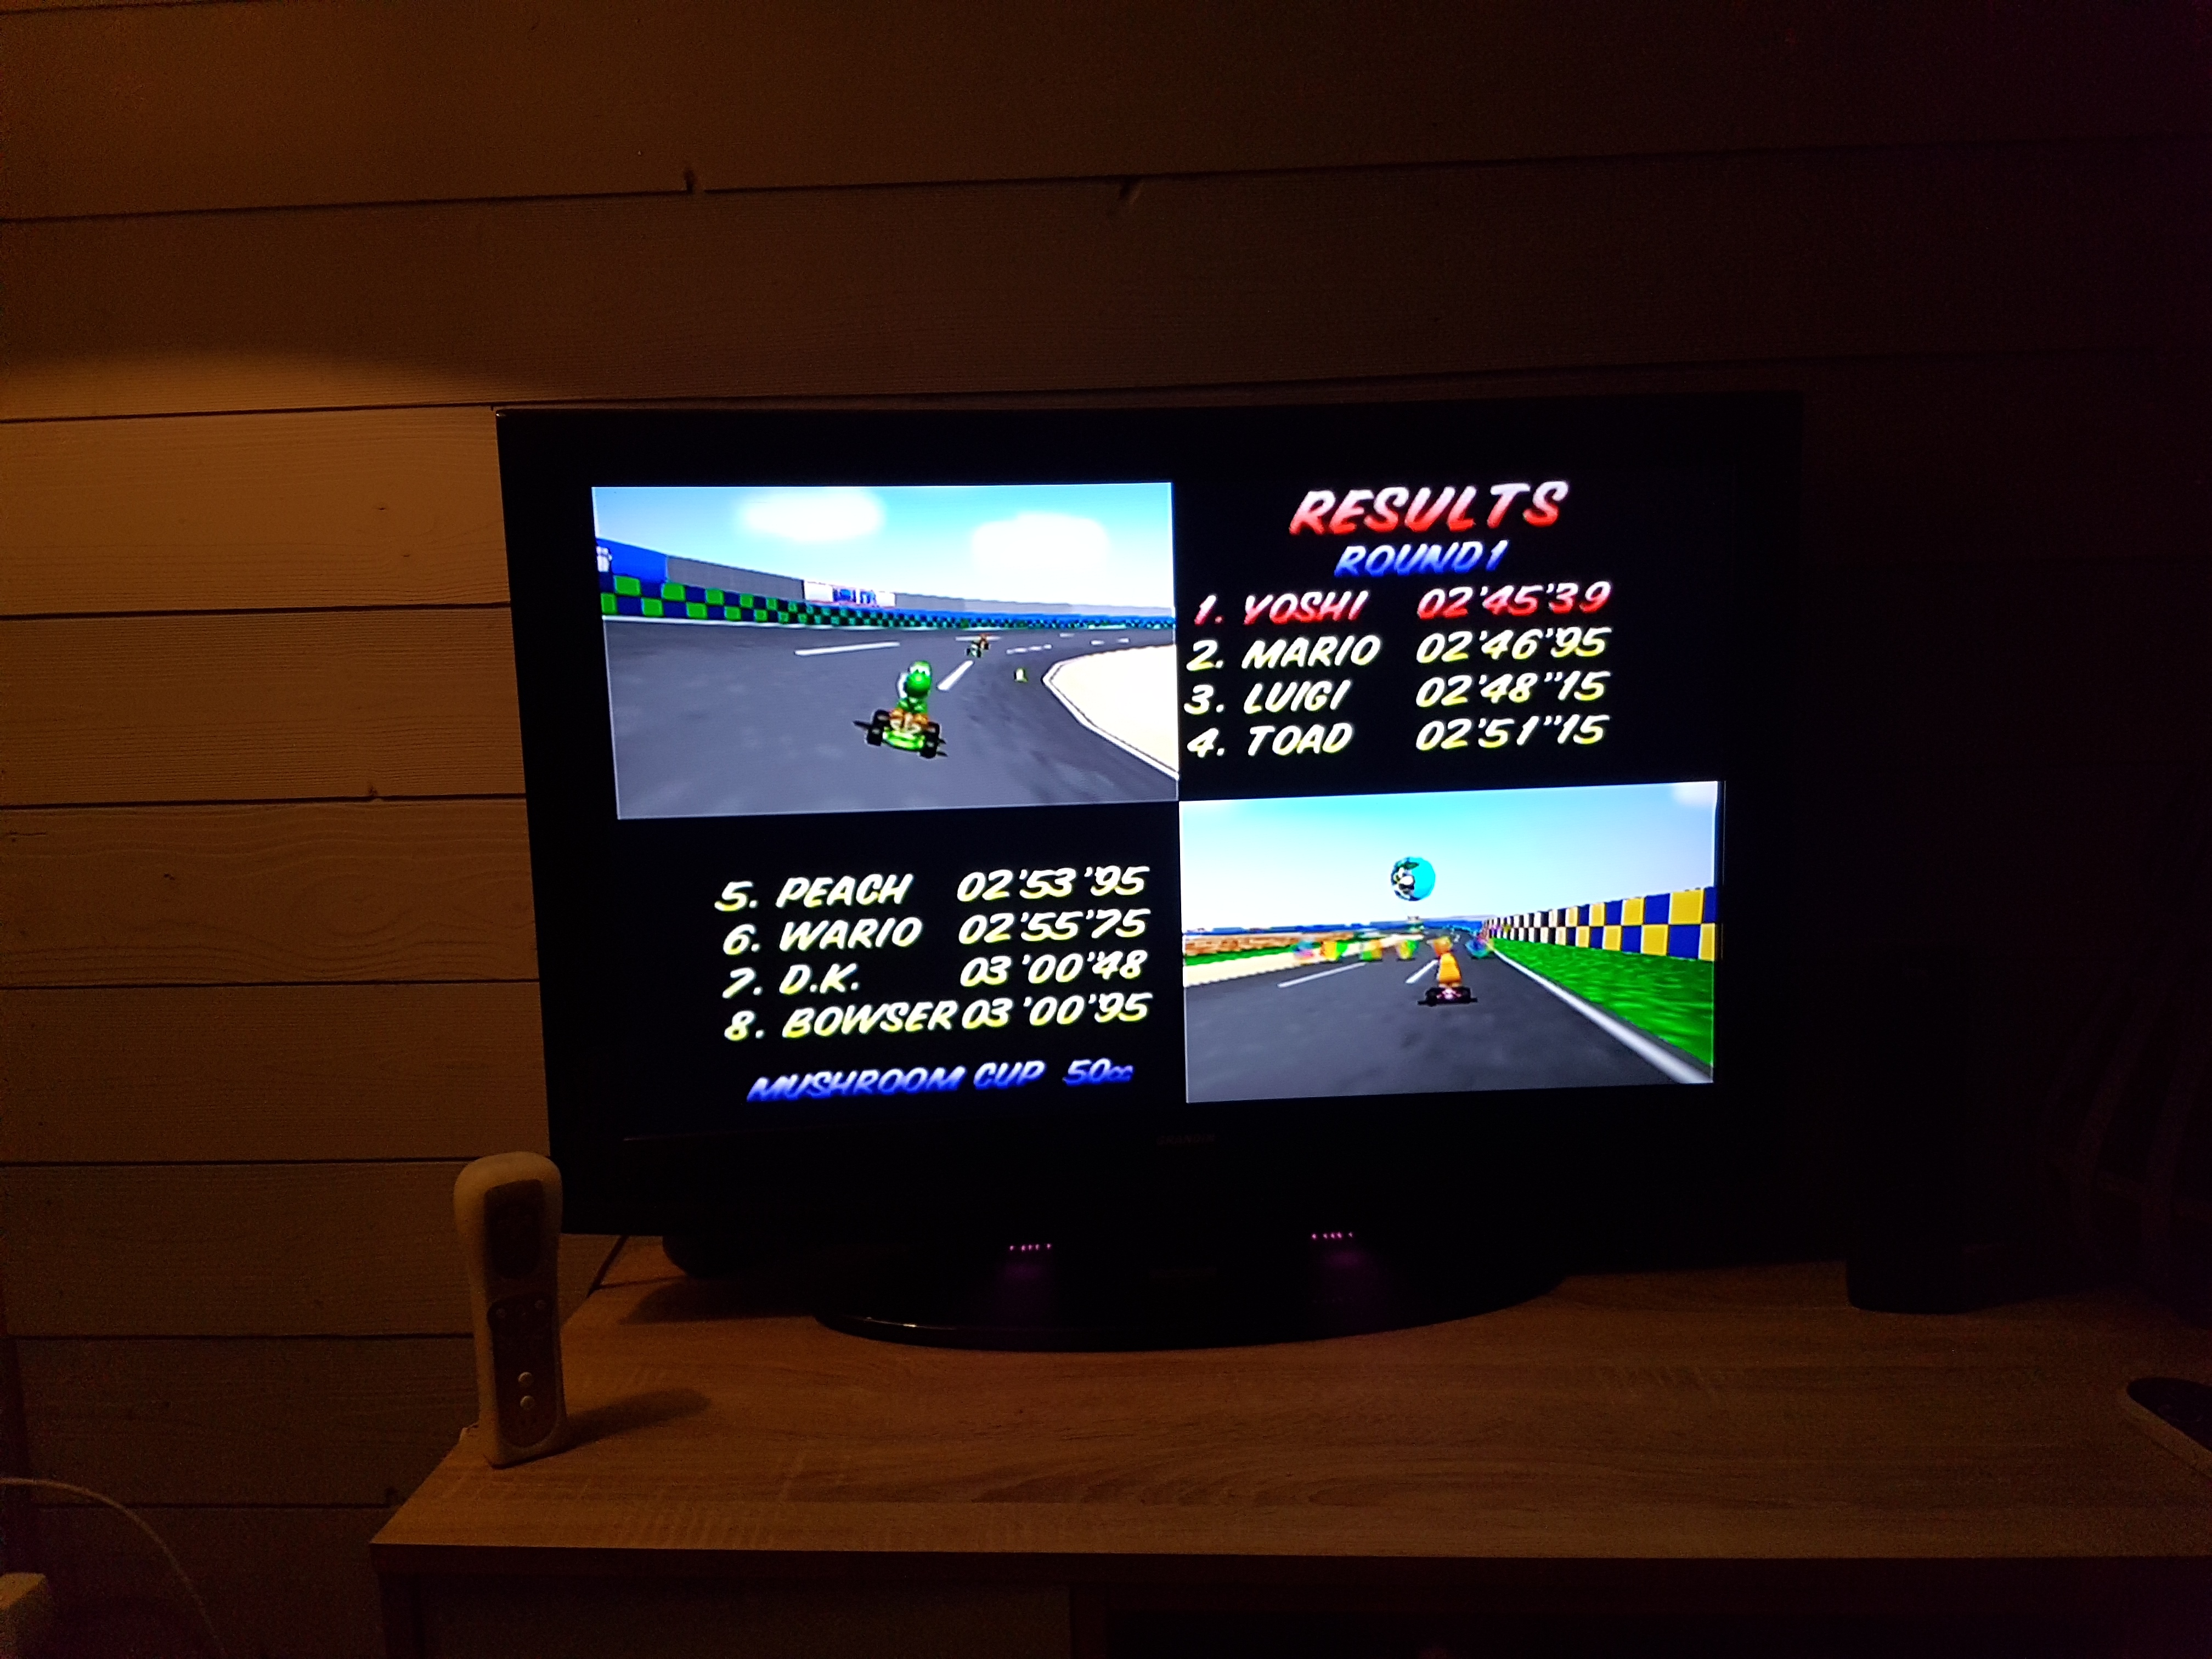 Mario Kart 64: Luigi Raceway [50cc] time of 0:02:45.39